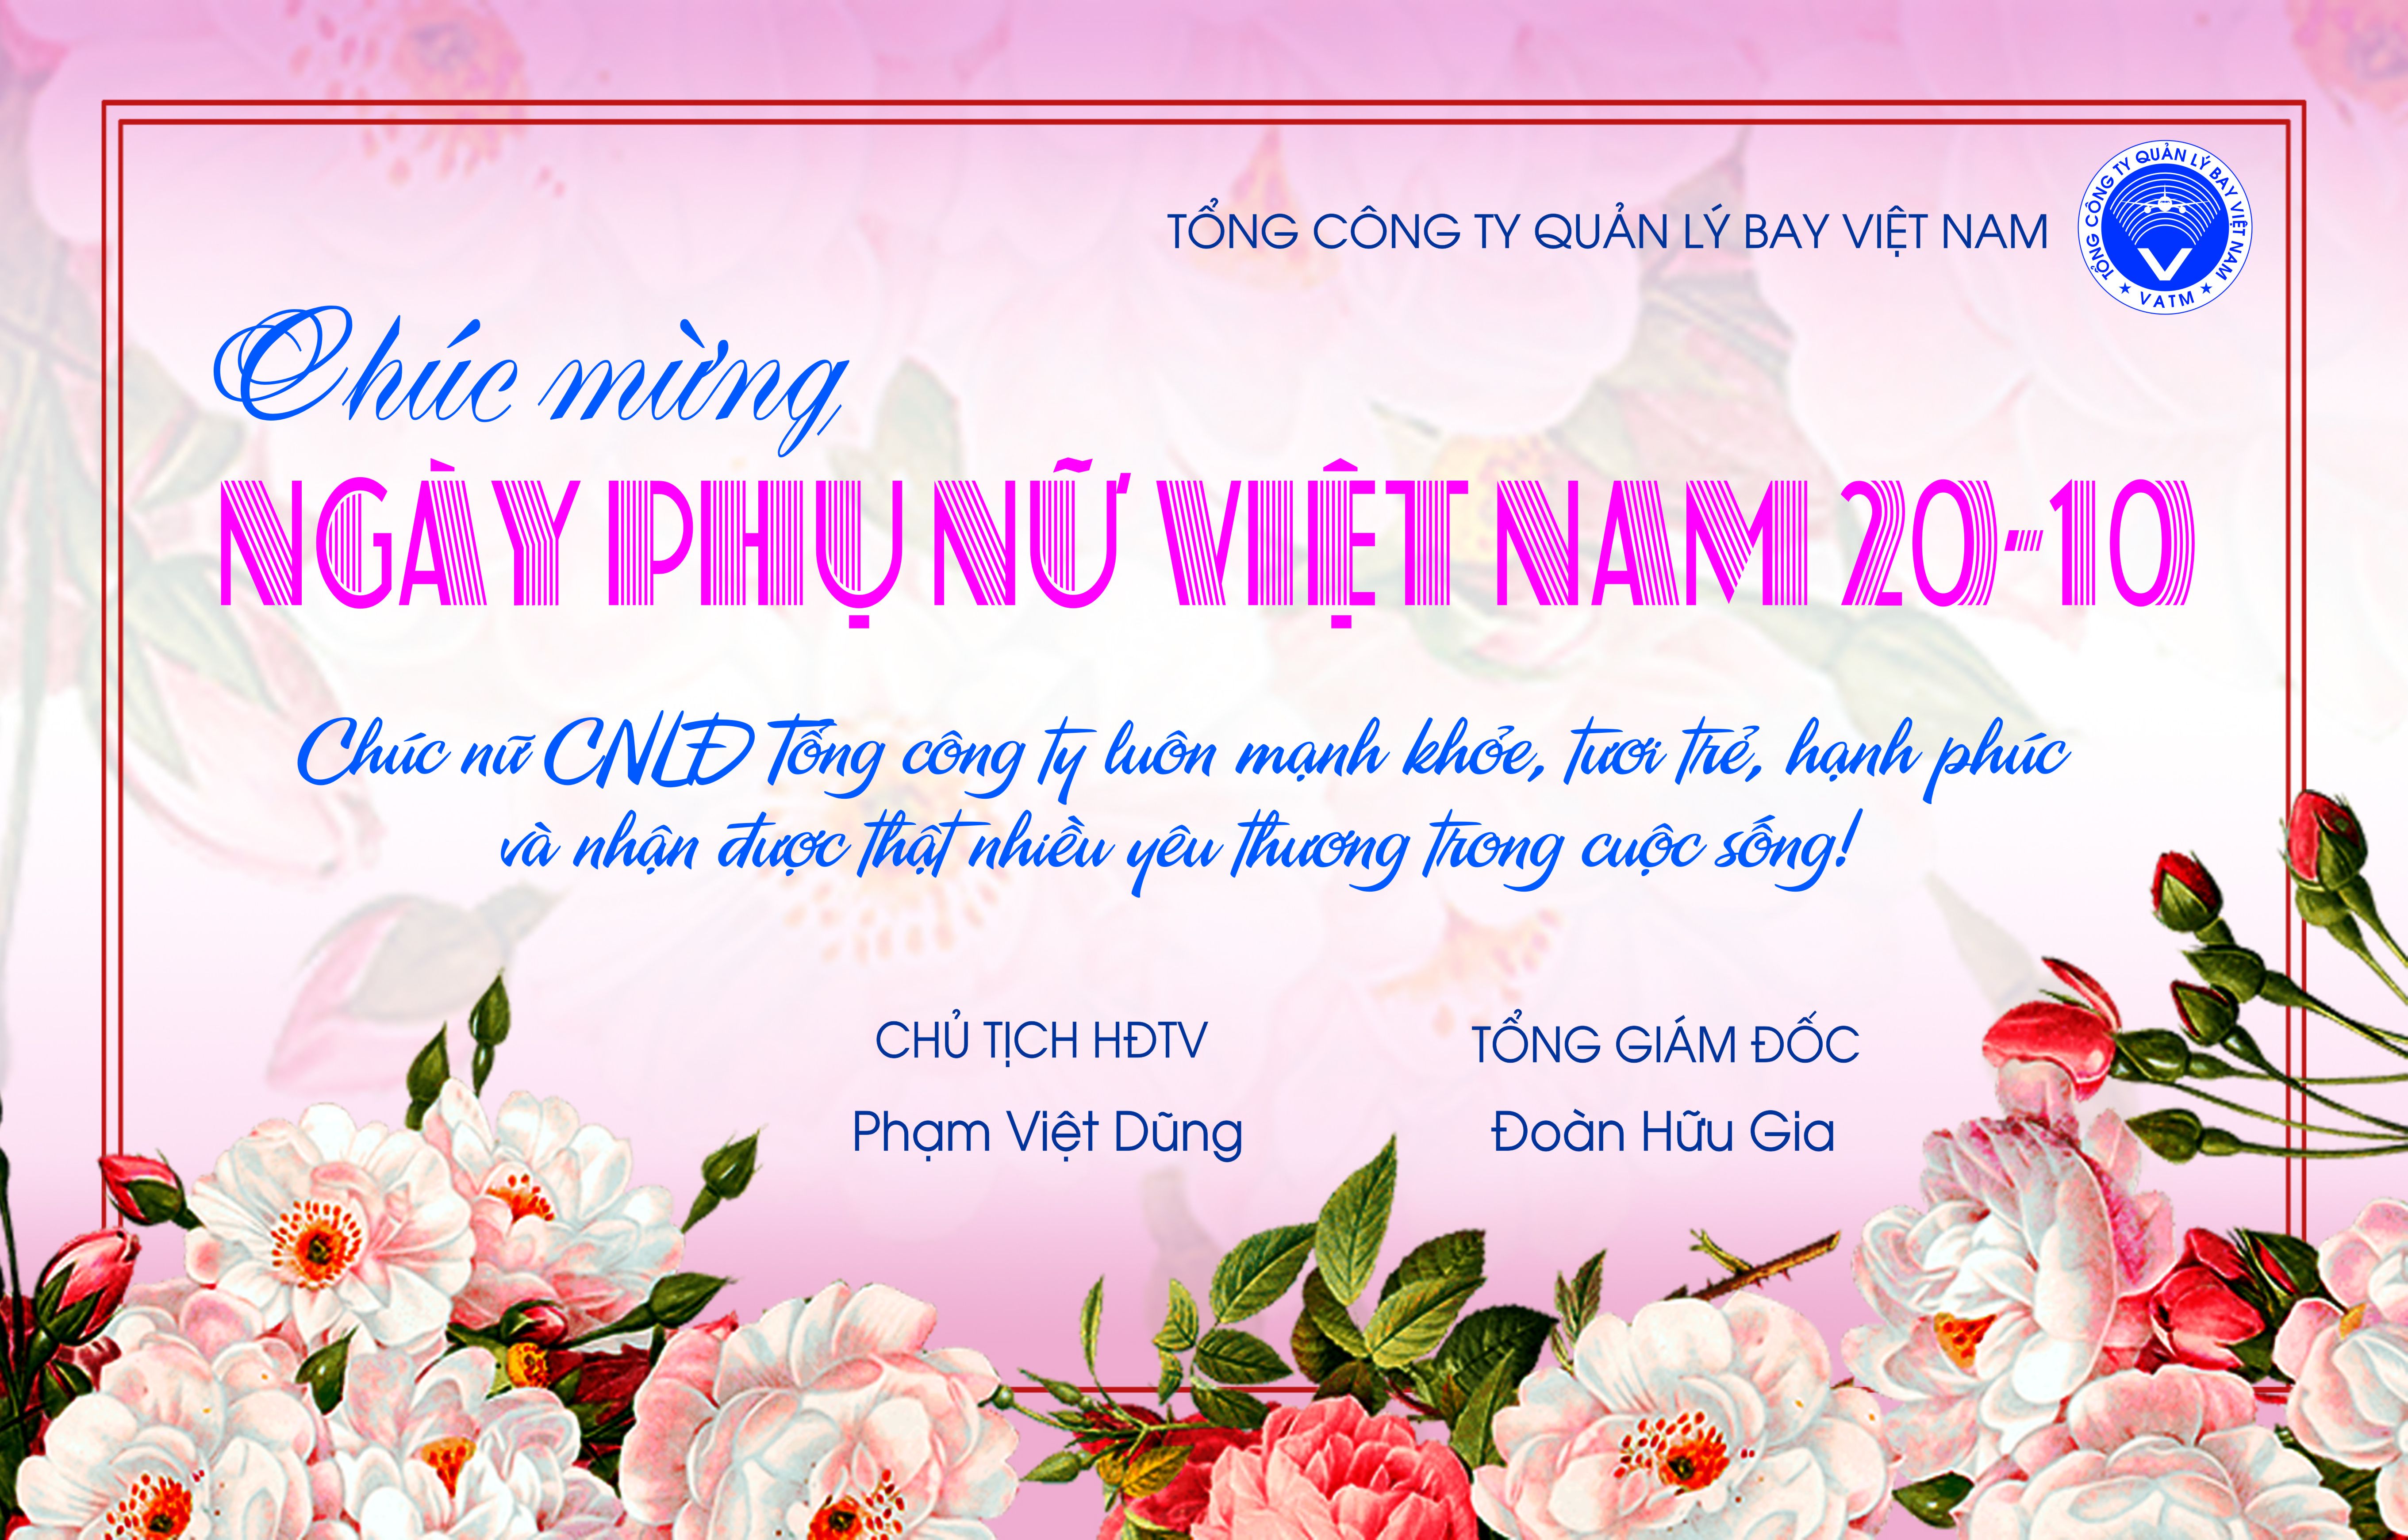 Lãnh đạo VATM chúc mừng ngày Phụ nữ Việt Nam 20-10